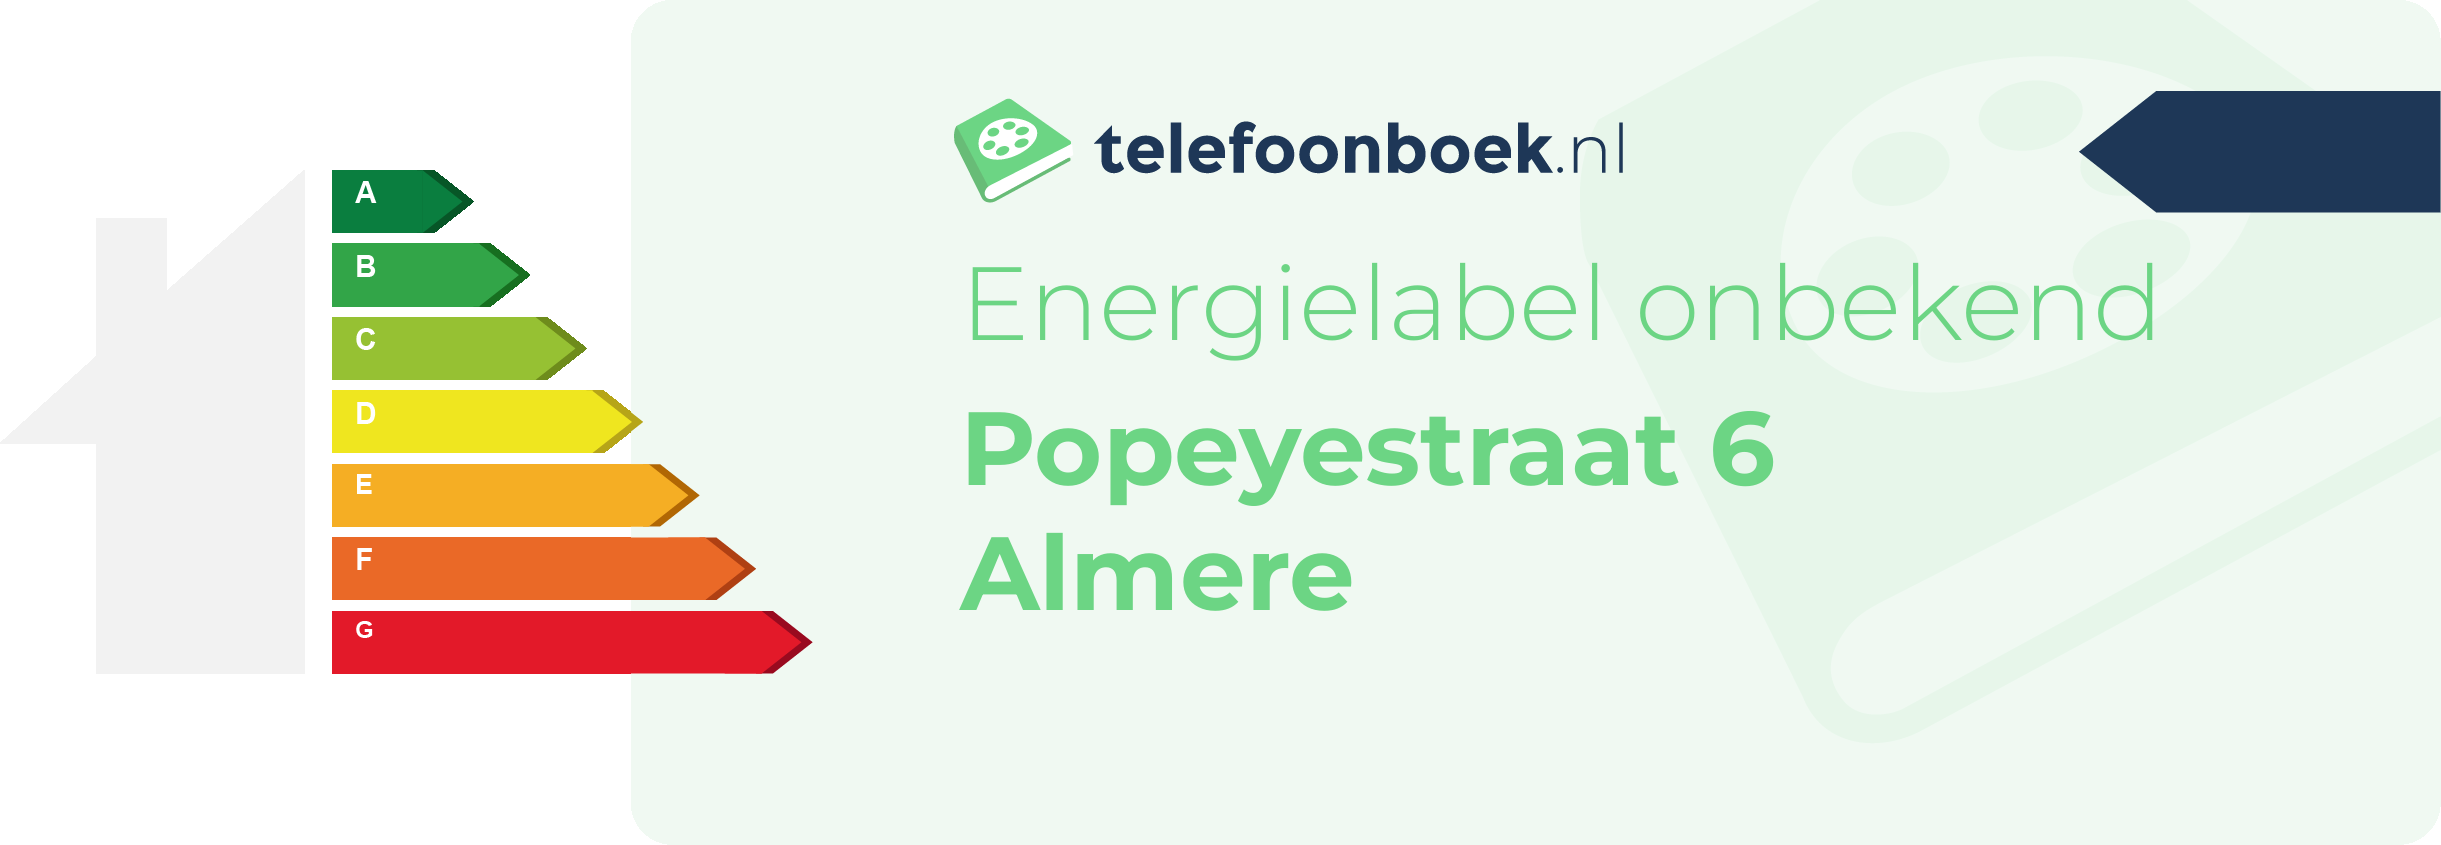 Energielabel Popeyestraat 6 Almere